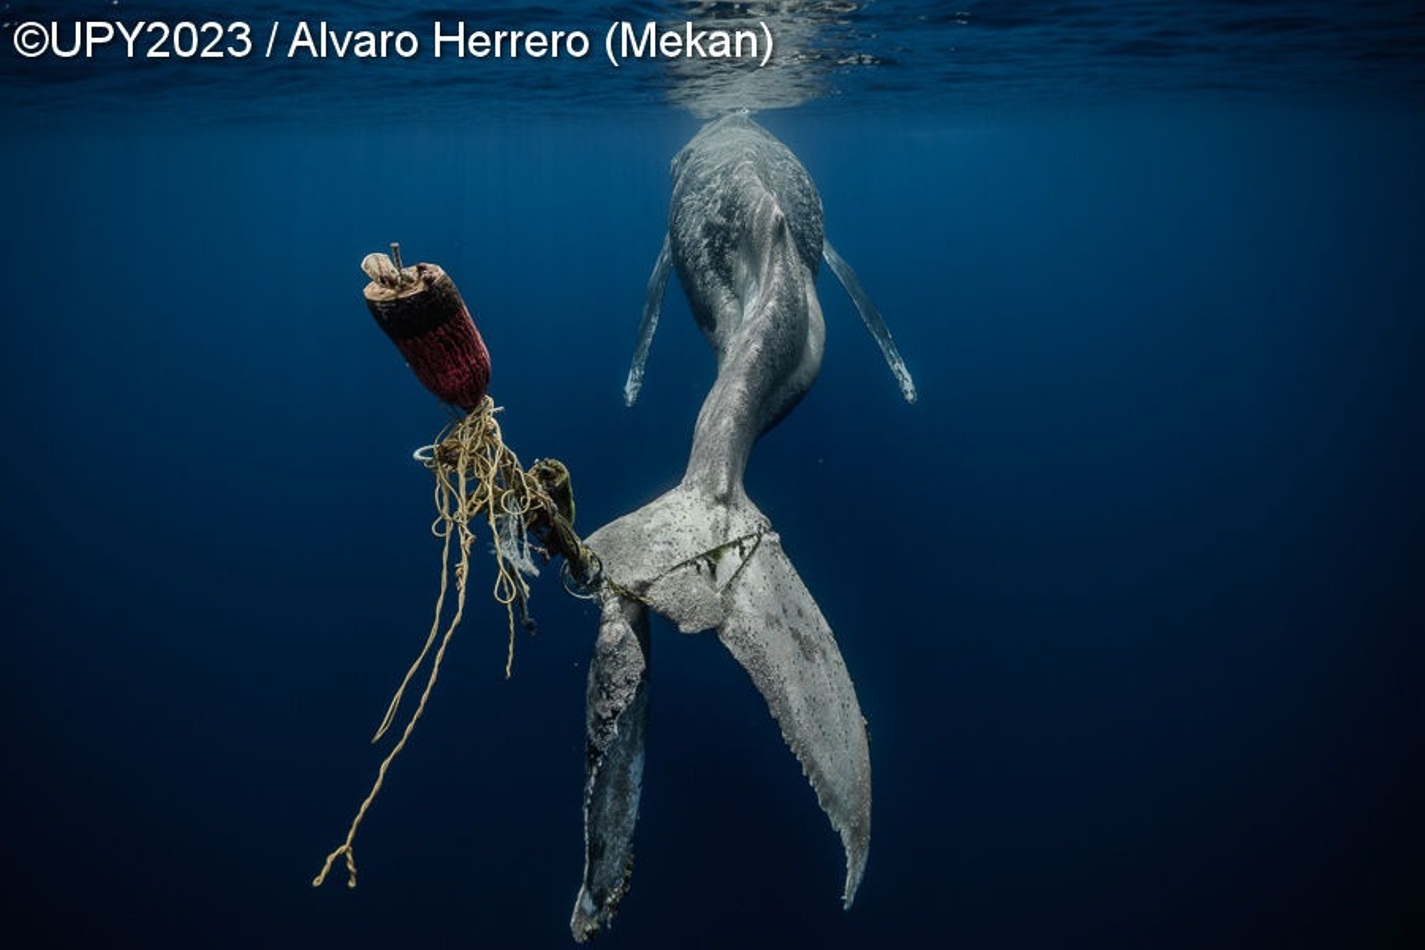 baleia jubarte com armadilha presa na cauda fotografia subaquática Califórnia